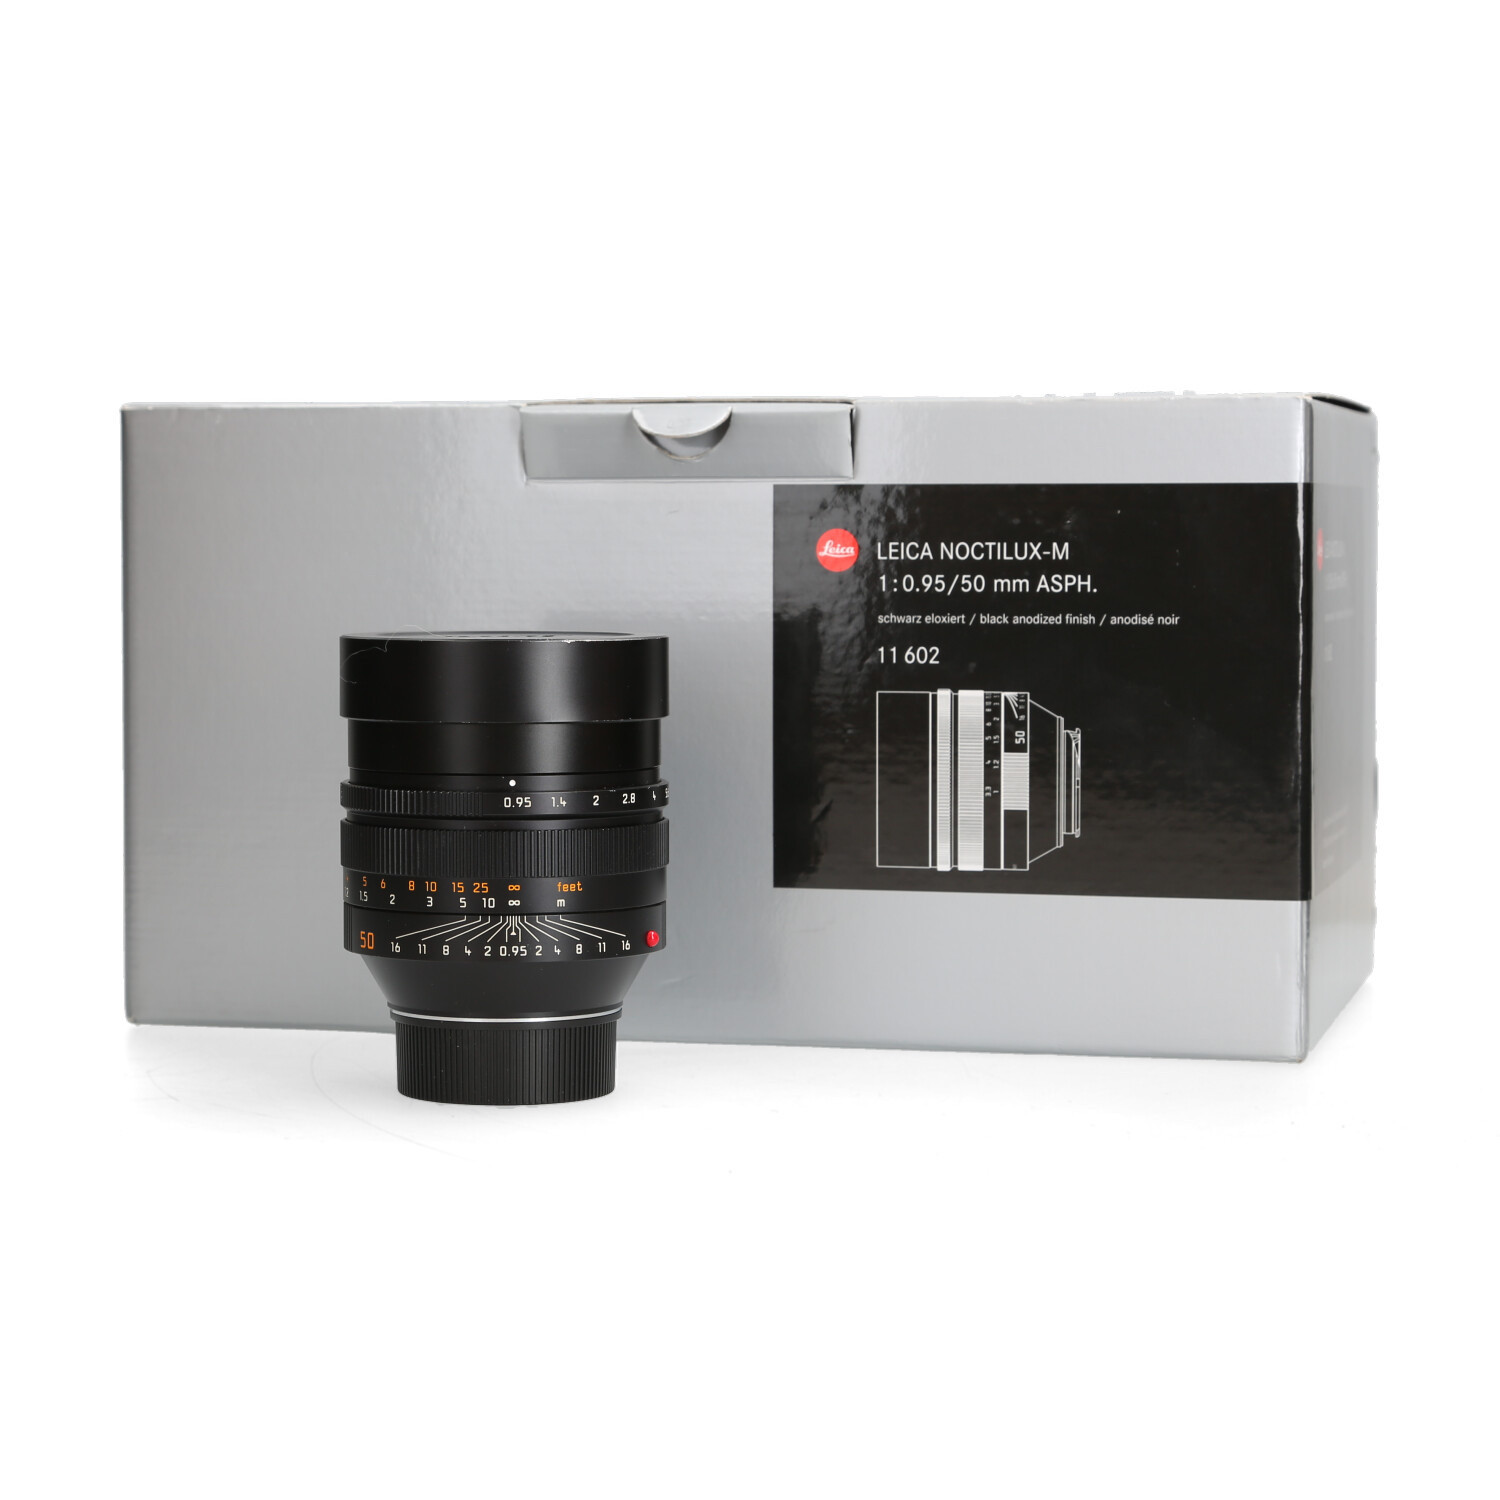 Leica Leica Noctilux 50mm 0.95 11602